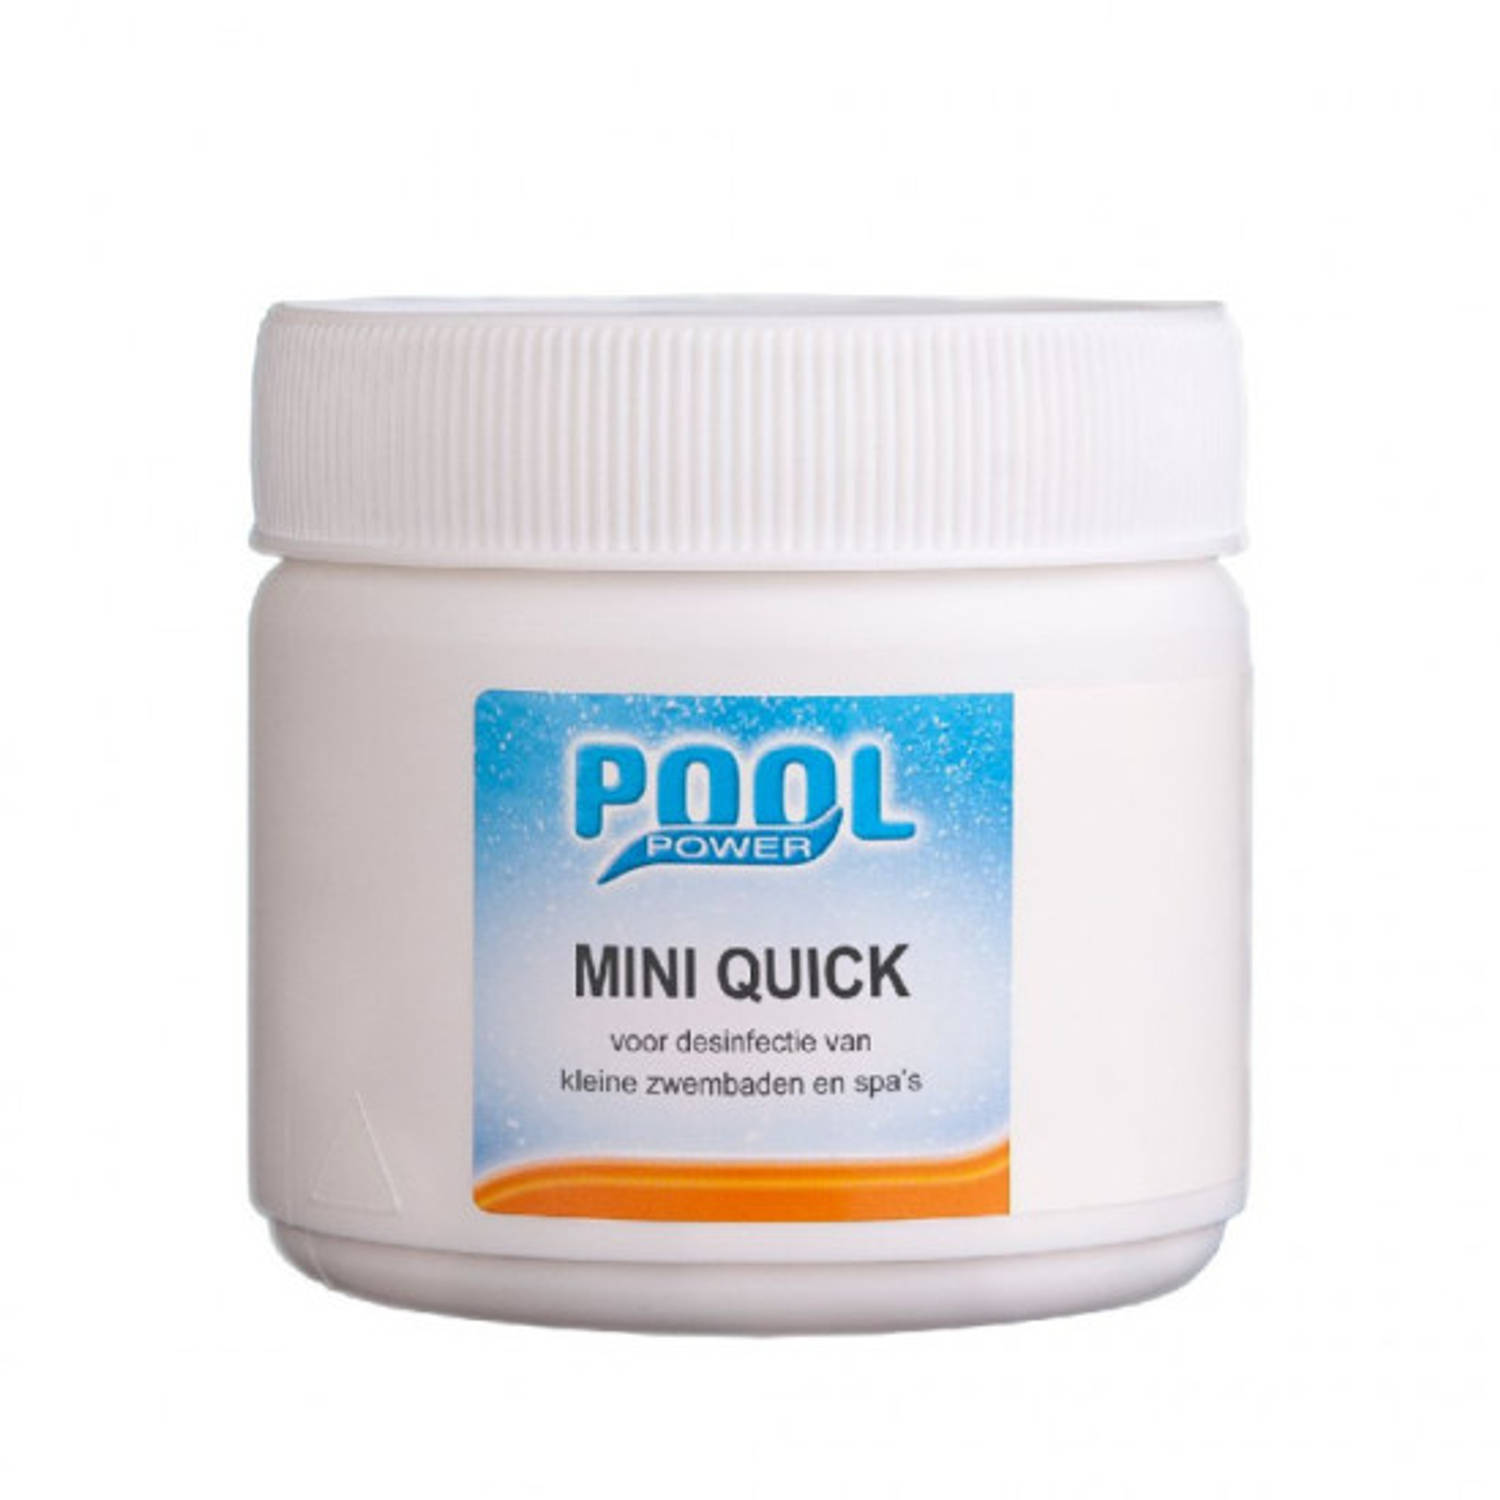 Pool Power Chloortabletten 180 mini tabletten Quick - Snel oplosbaar